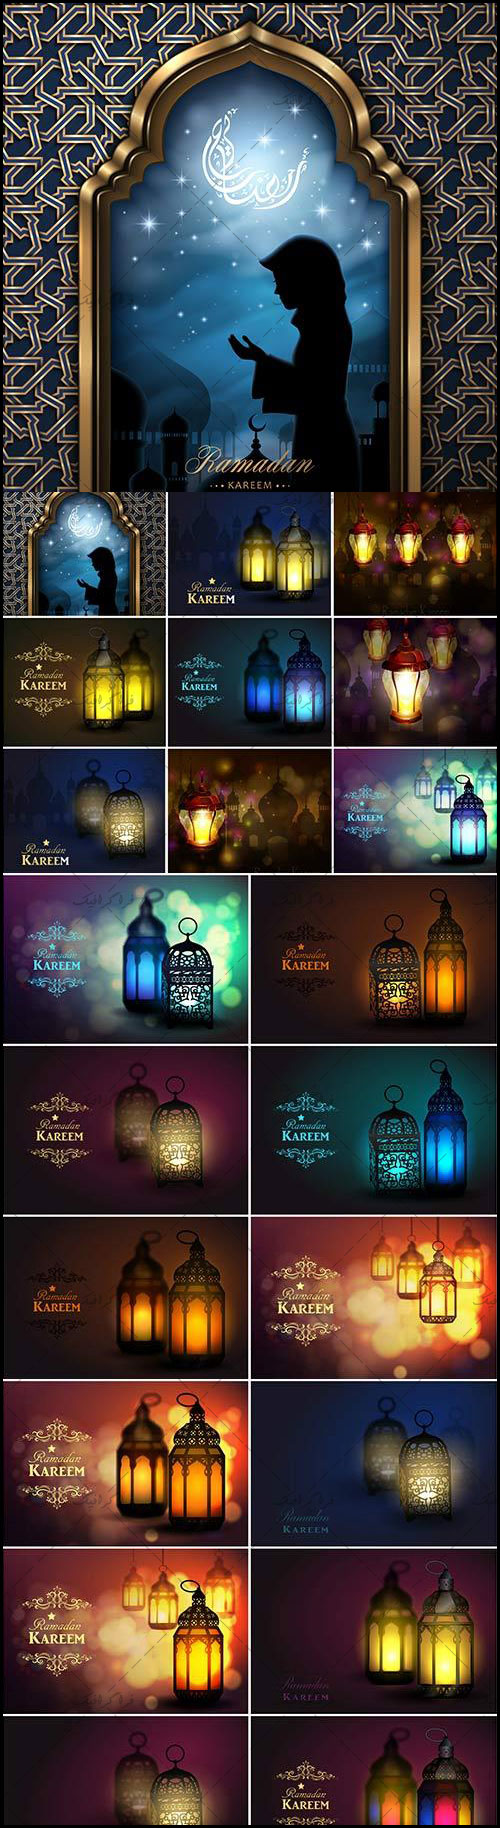 دانلود وکتور طرح های ماه رمضان فانوس نورانی